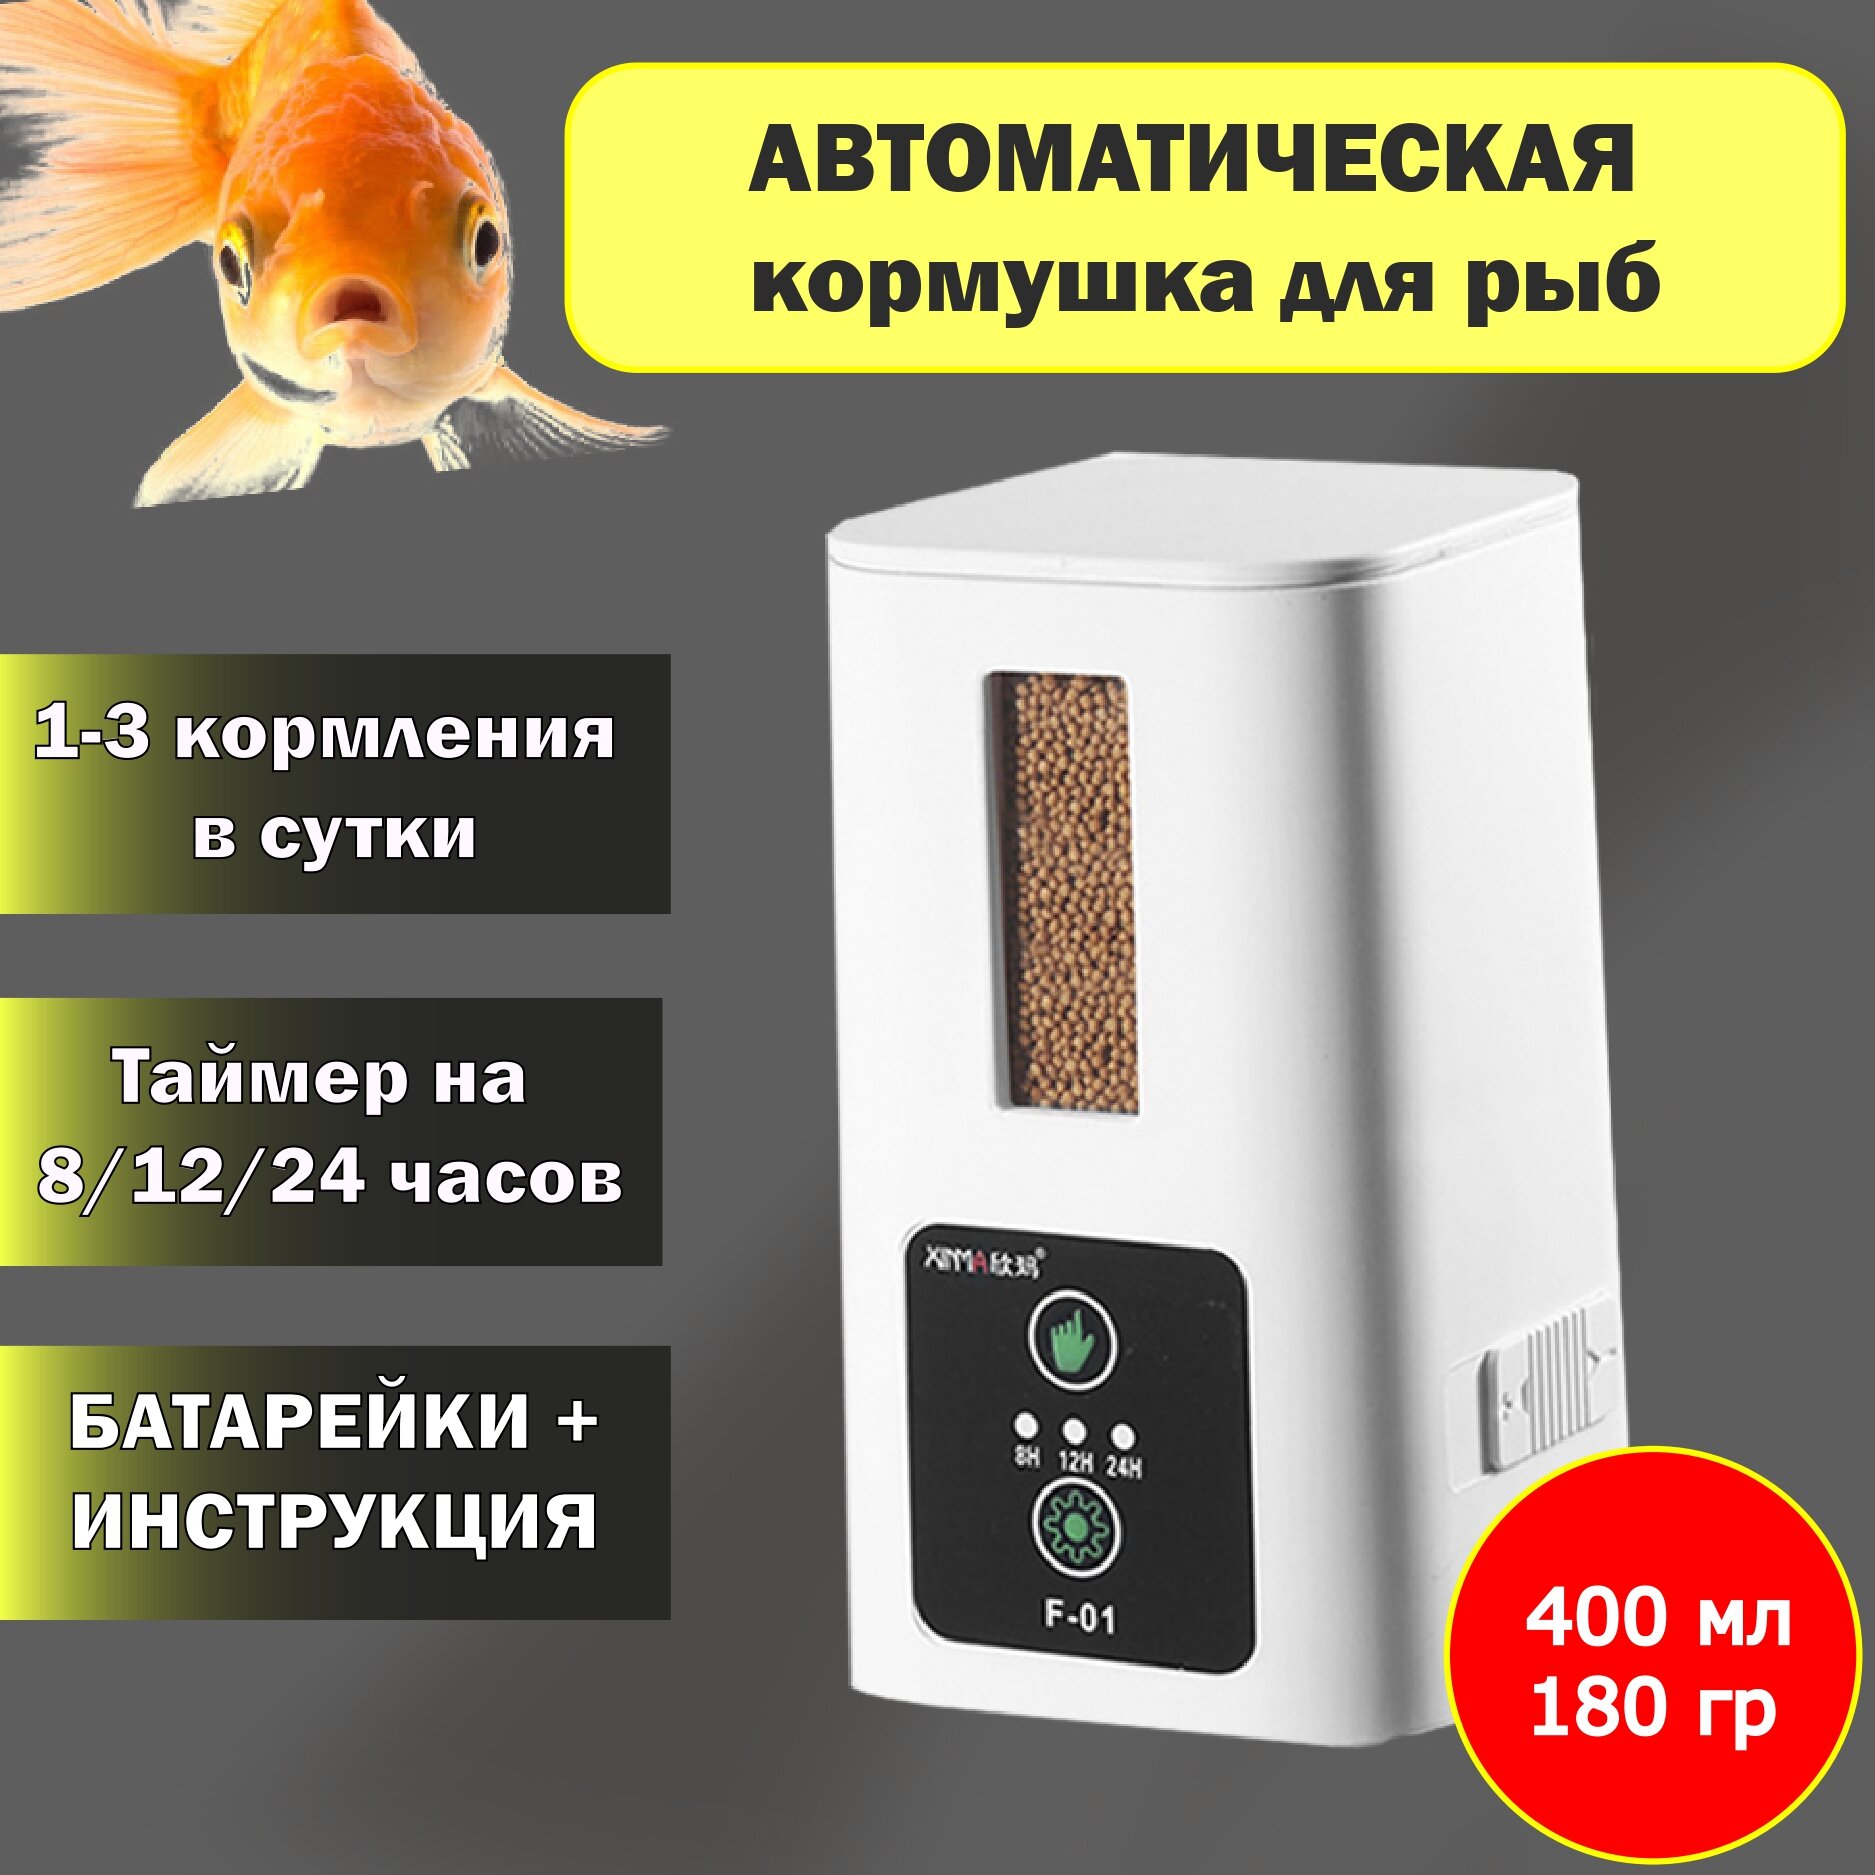 Автоматическая кормушка для рыб в аквариум, 400 мл, белая